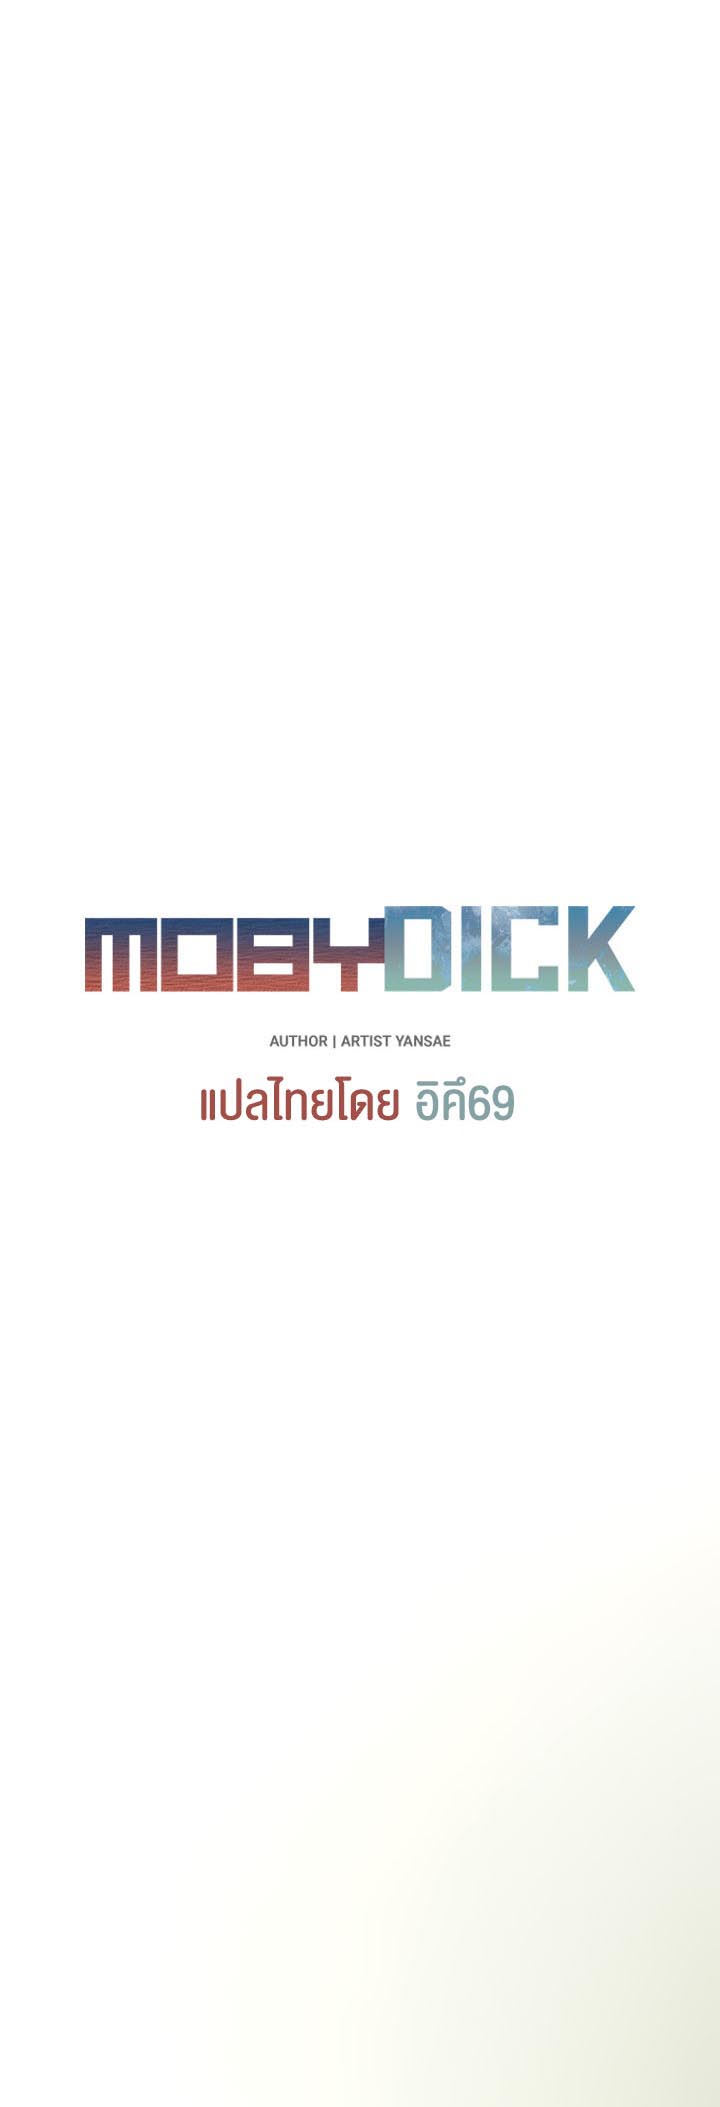 อ่านโดจิน เรื่อง Moby Dick โมบี้ดิ๊ก 10 06